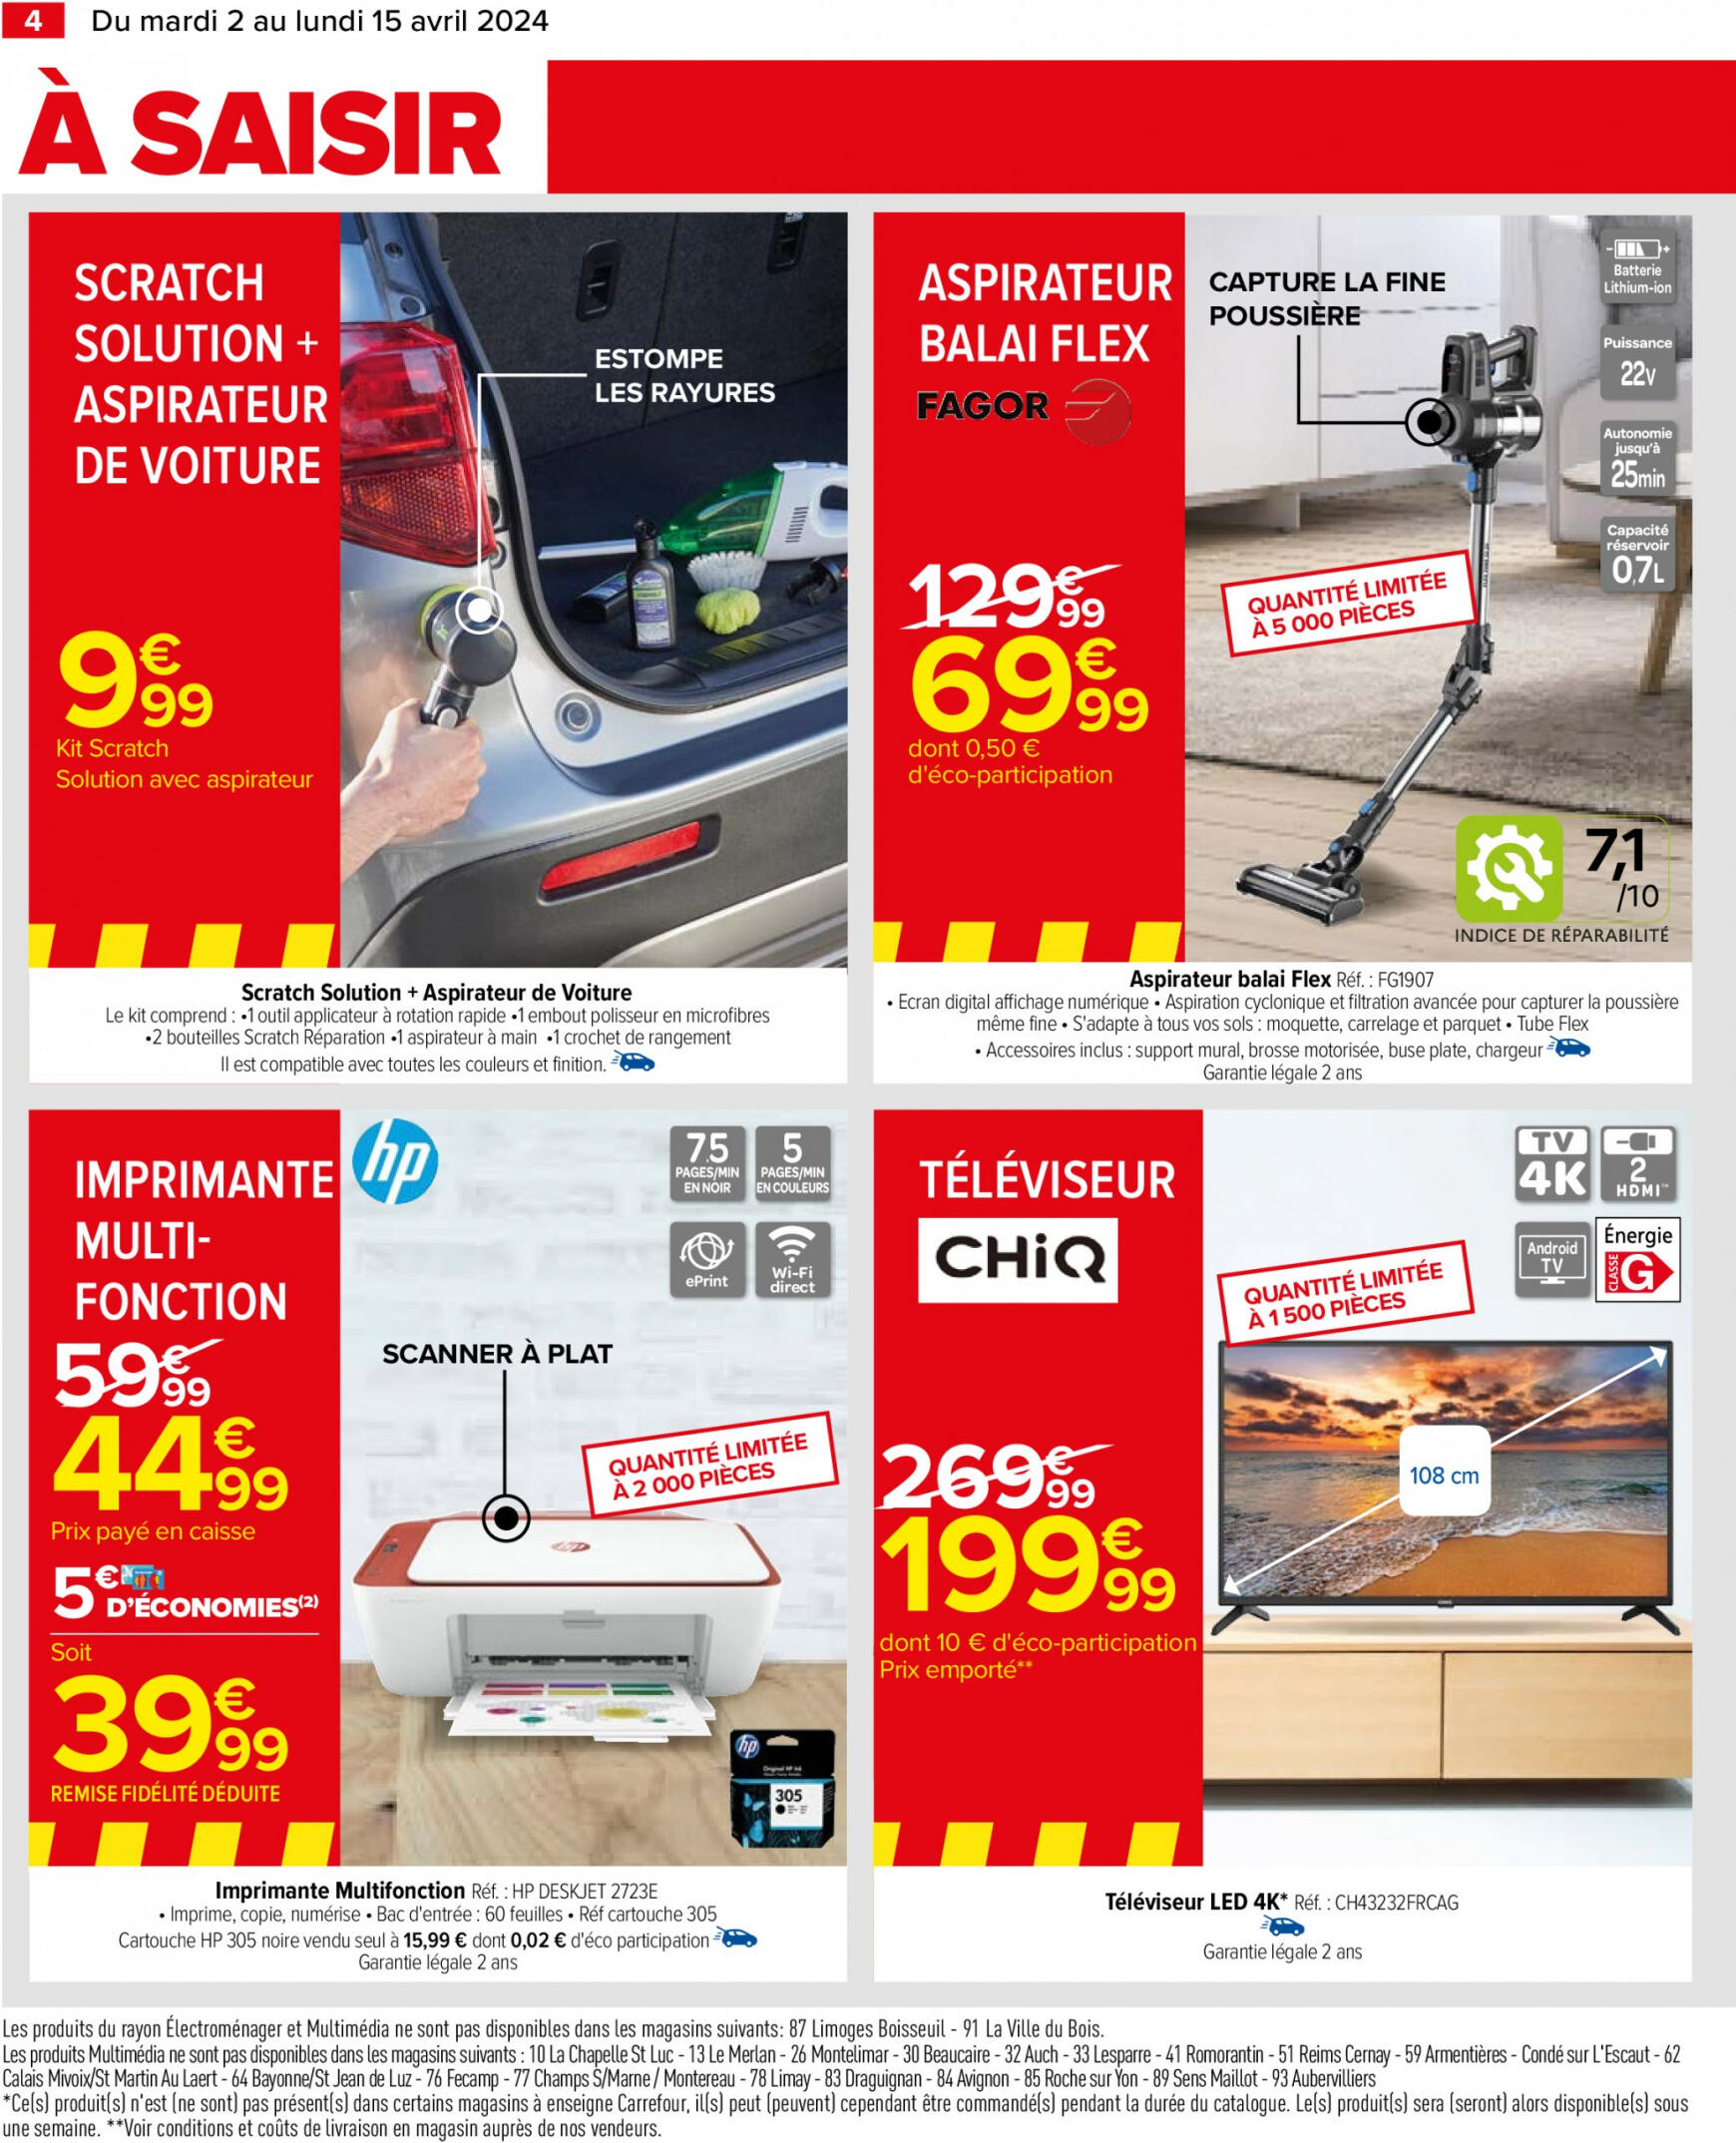 carrefour - Carrefour valable à partir de 02.04.2024 - page: 8